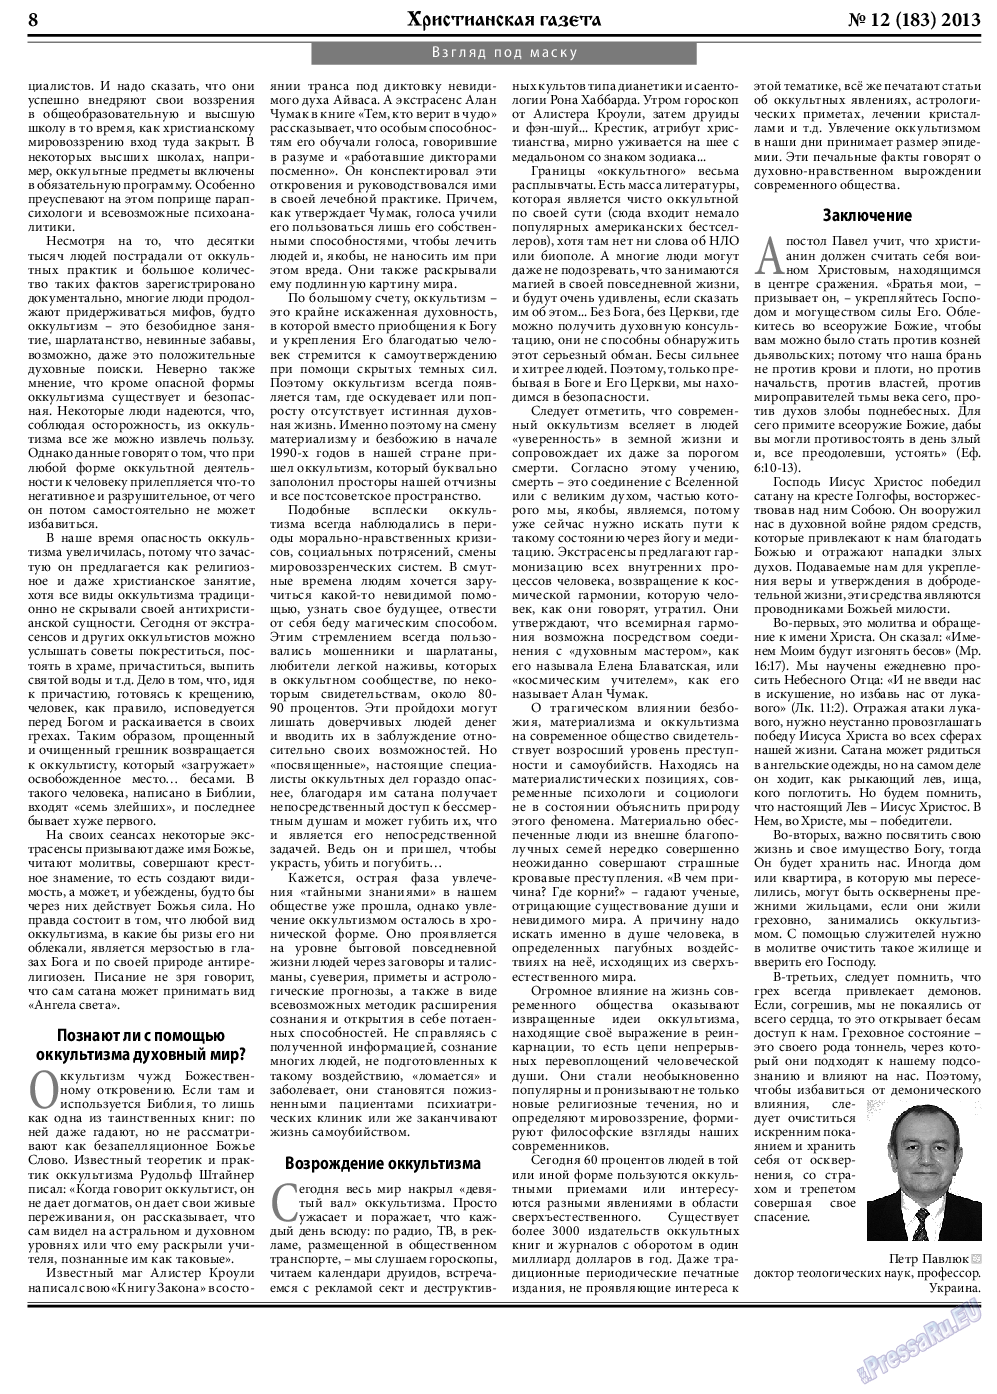 Христианская газета, газета. 2013 №12 стр.8